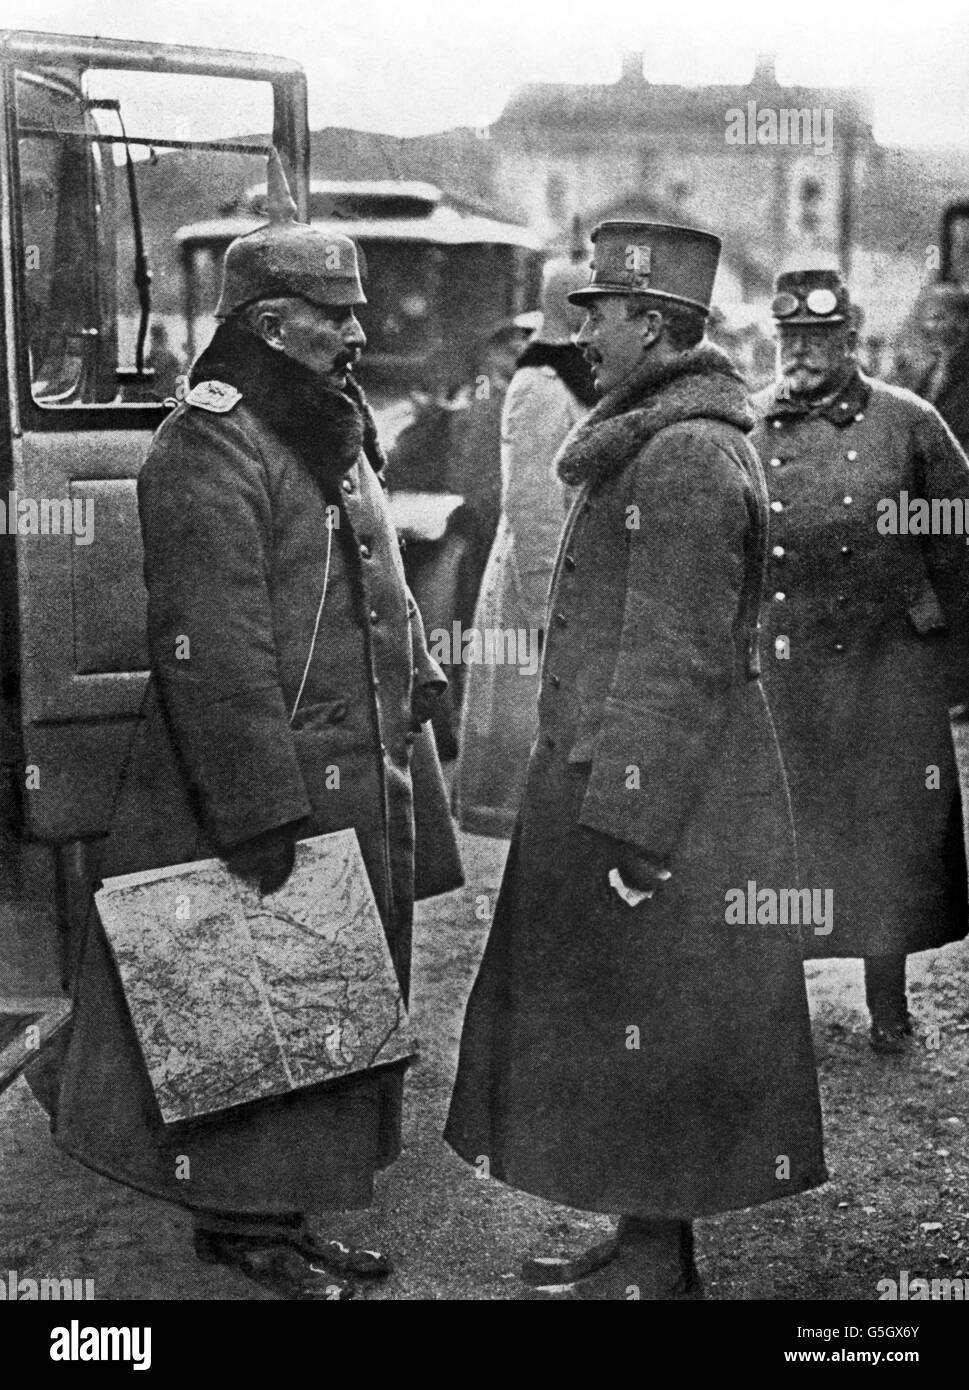 Kaiser Guglielmo II, imperatore tedesco, in conversazione con Carlo i, imperatore d'Austria, in una piccola stazione ferroviaria sul fronte italiano. Foto Stock